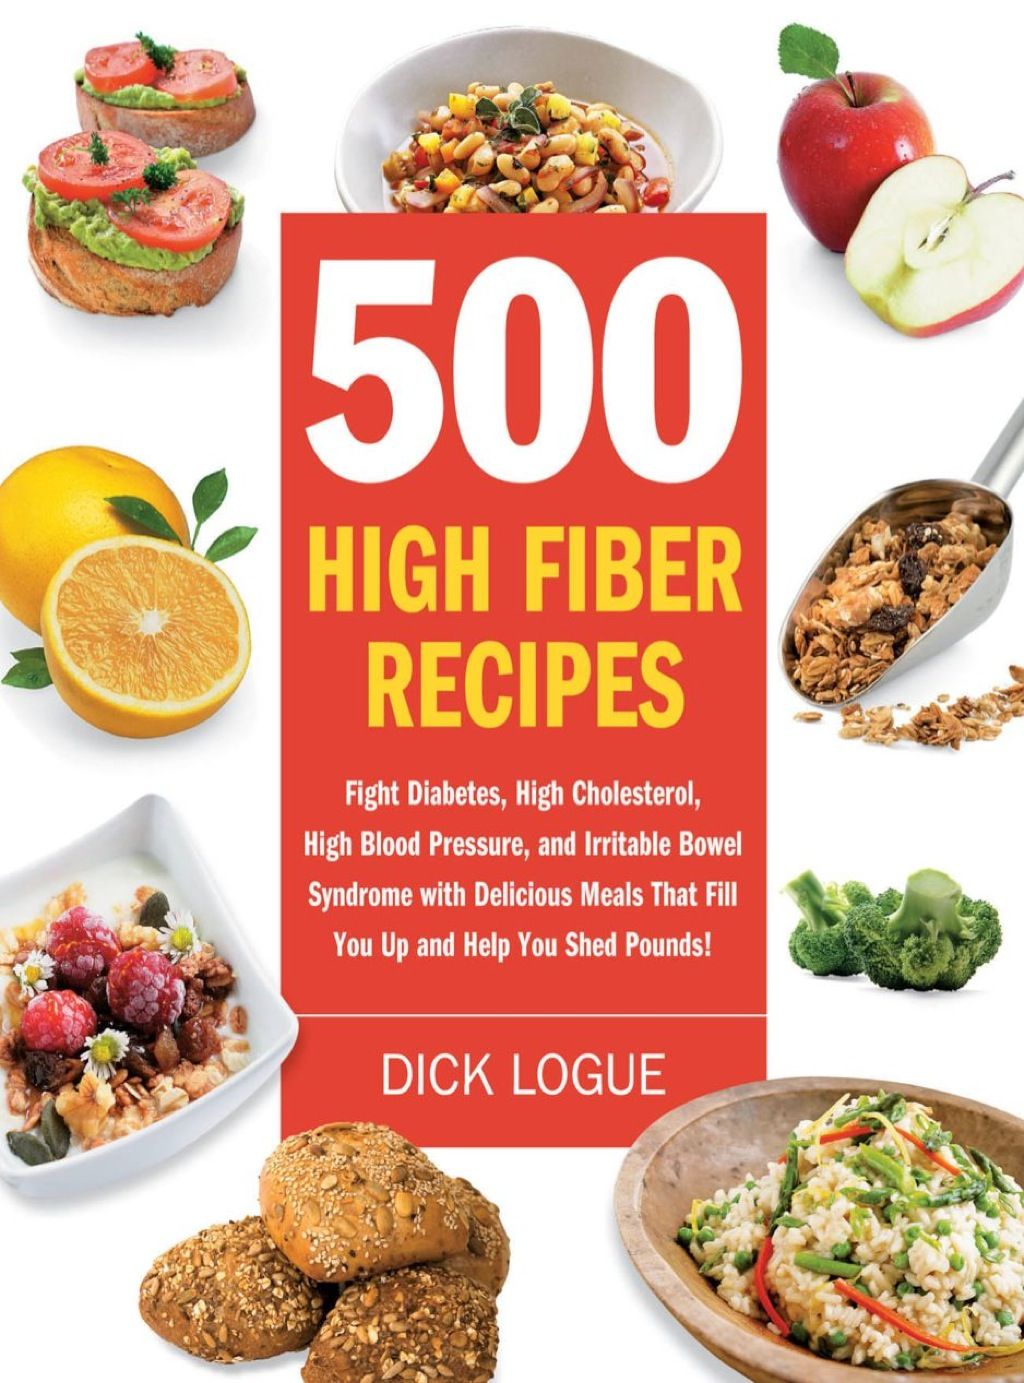 500 High Fiber Recipes (eBook) in 2020